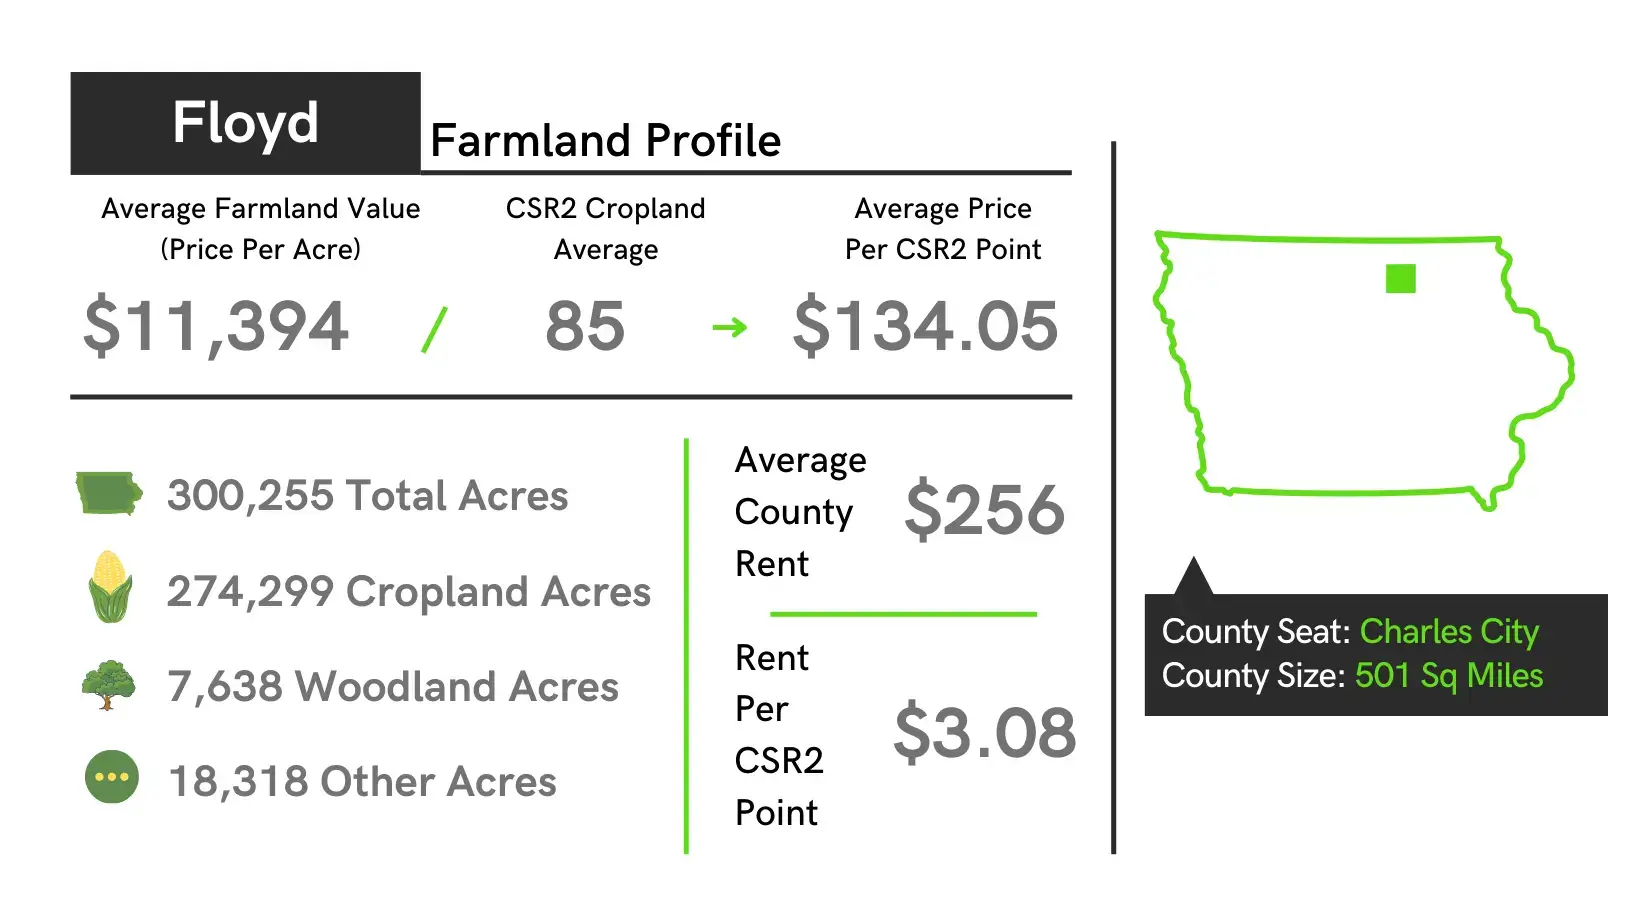 Floyd County Farmland Profile